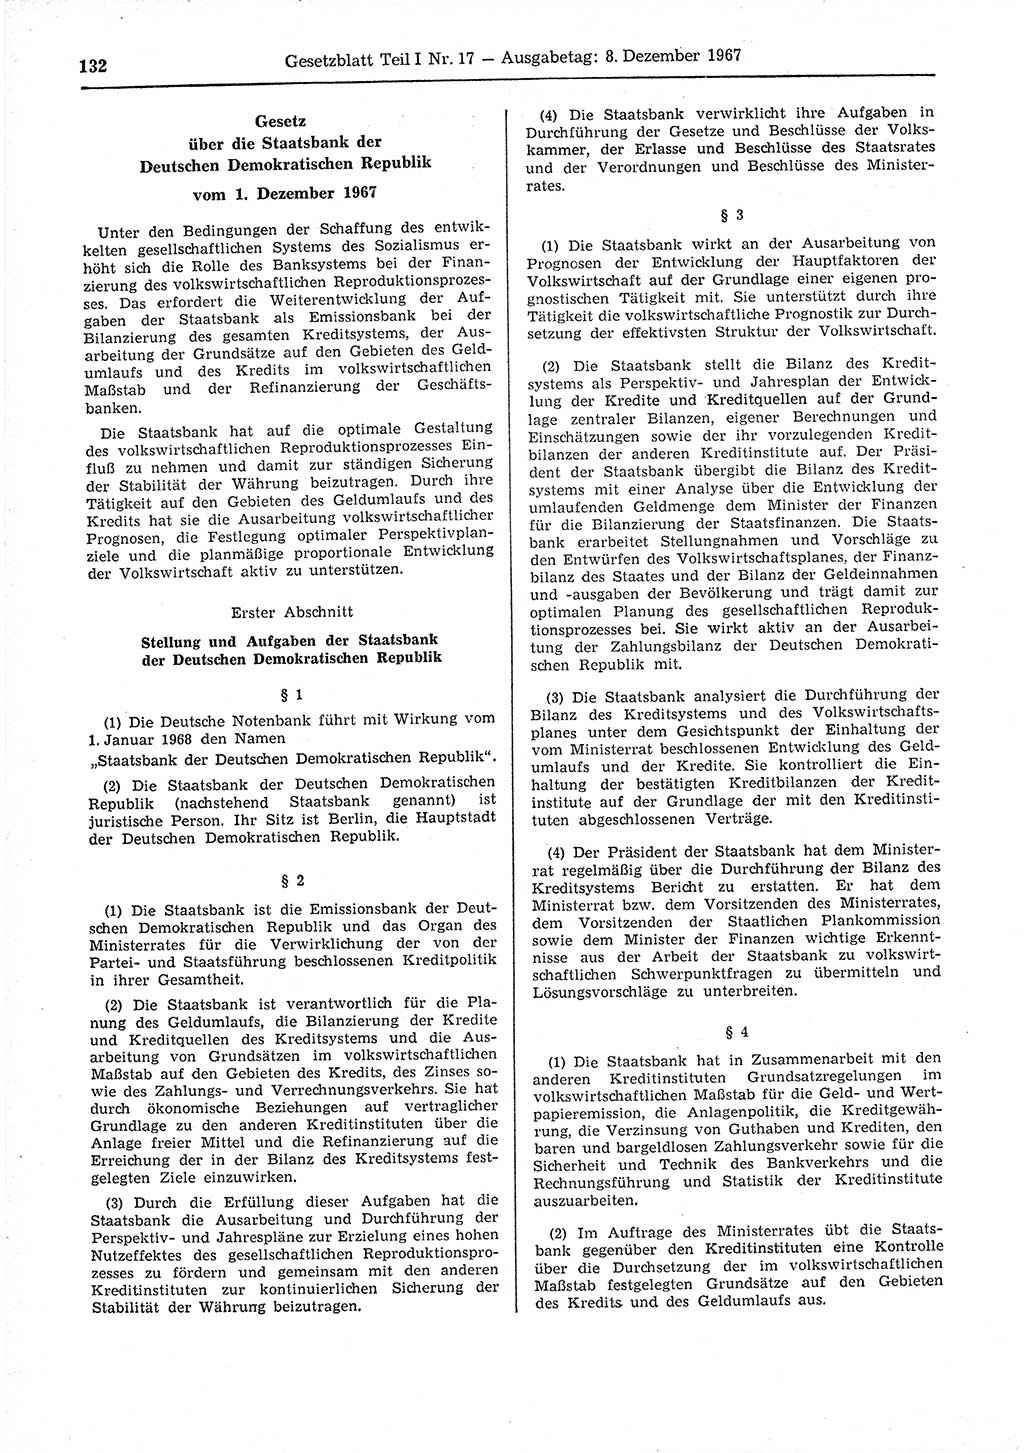 Gesetzblatt (GBl.) der Deutschen Demokratischen Republik (DDR) Teil Ⅰ 1967, Seite 132 (GBl. DDR Ⅰ 1967, S. 132)